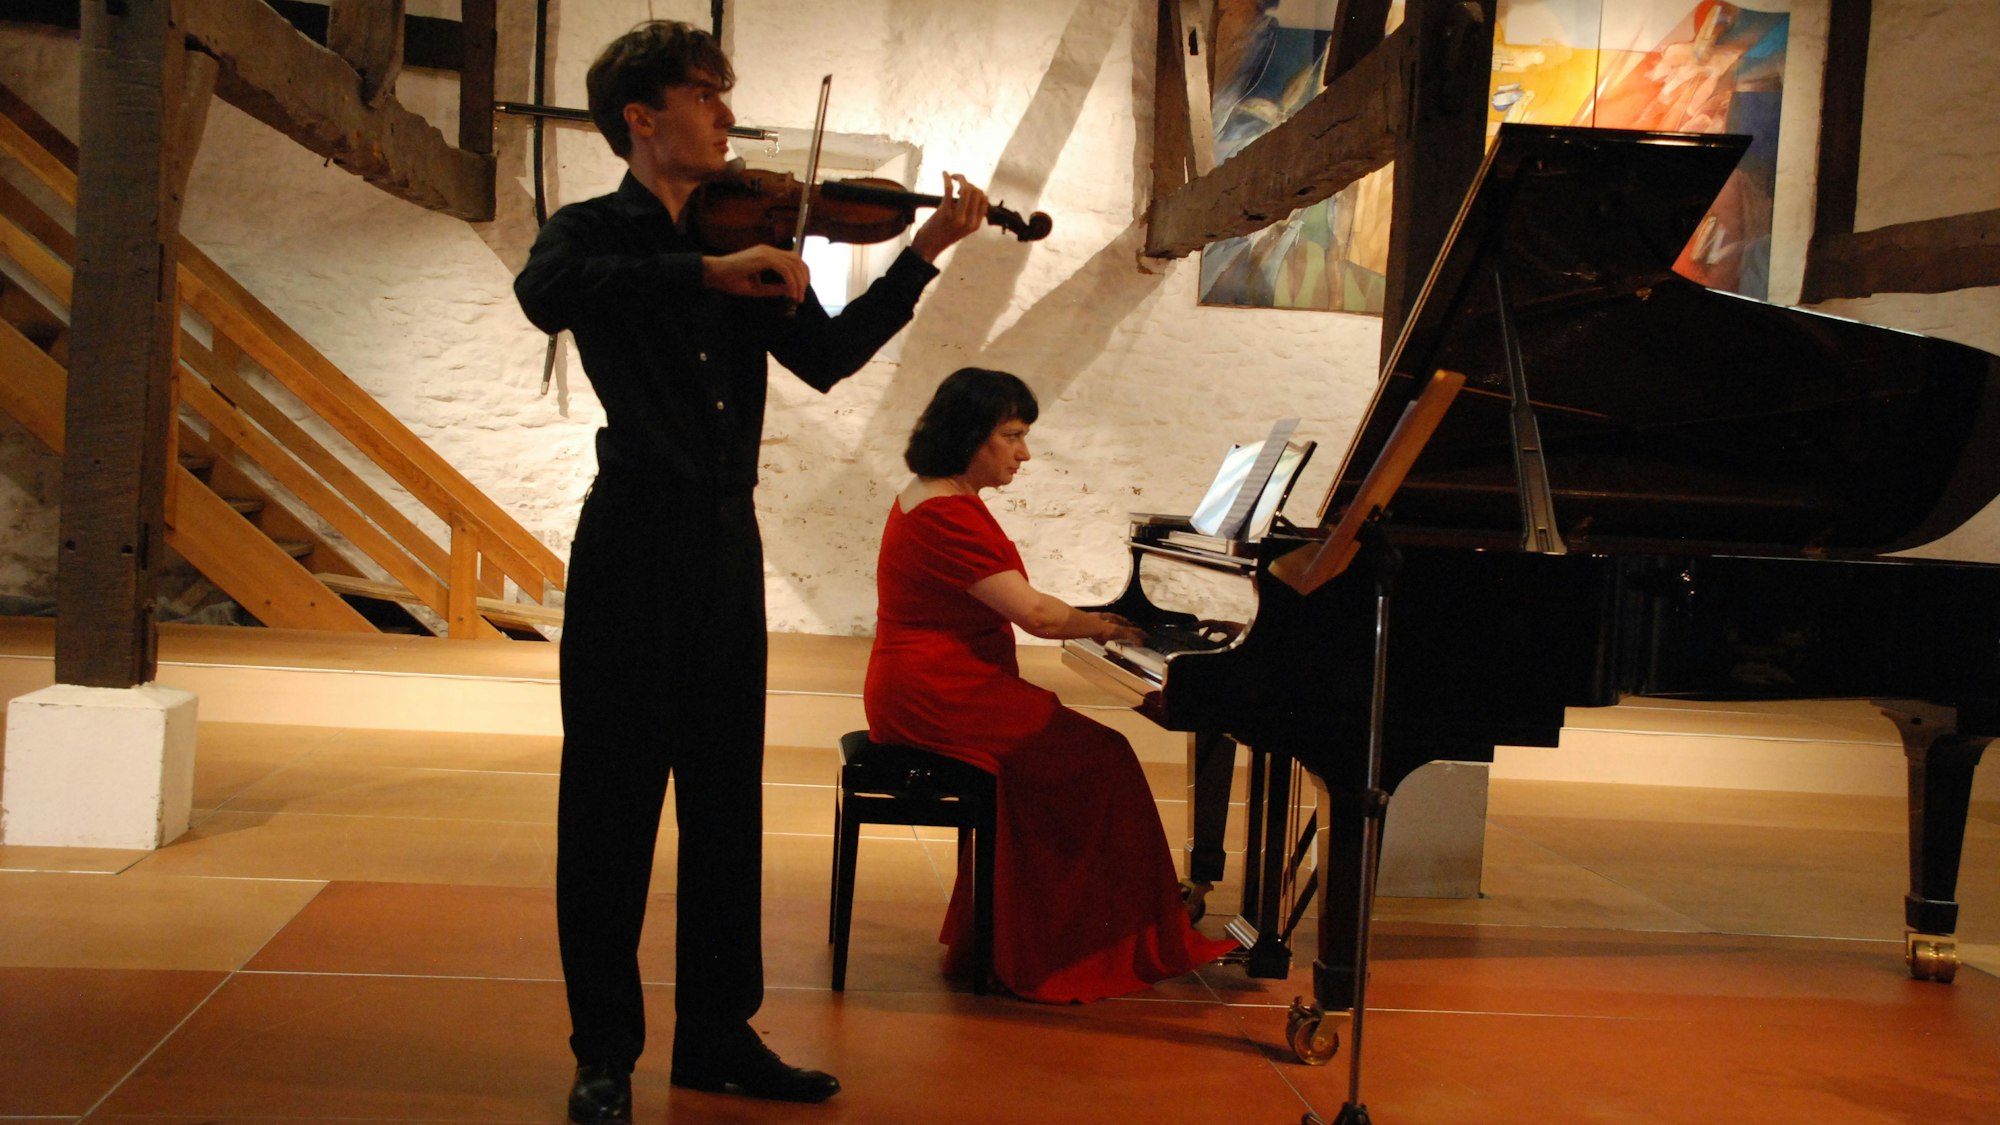 Das Bild zeigt die beiden Musiker während ihres Auftritts.